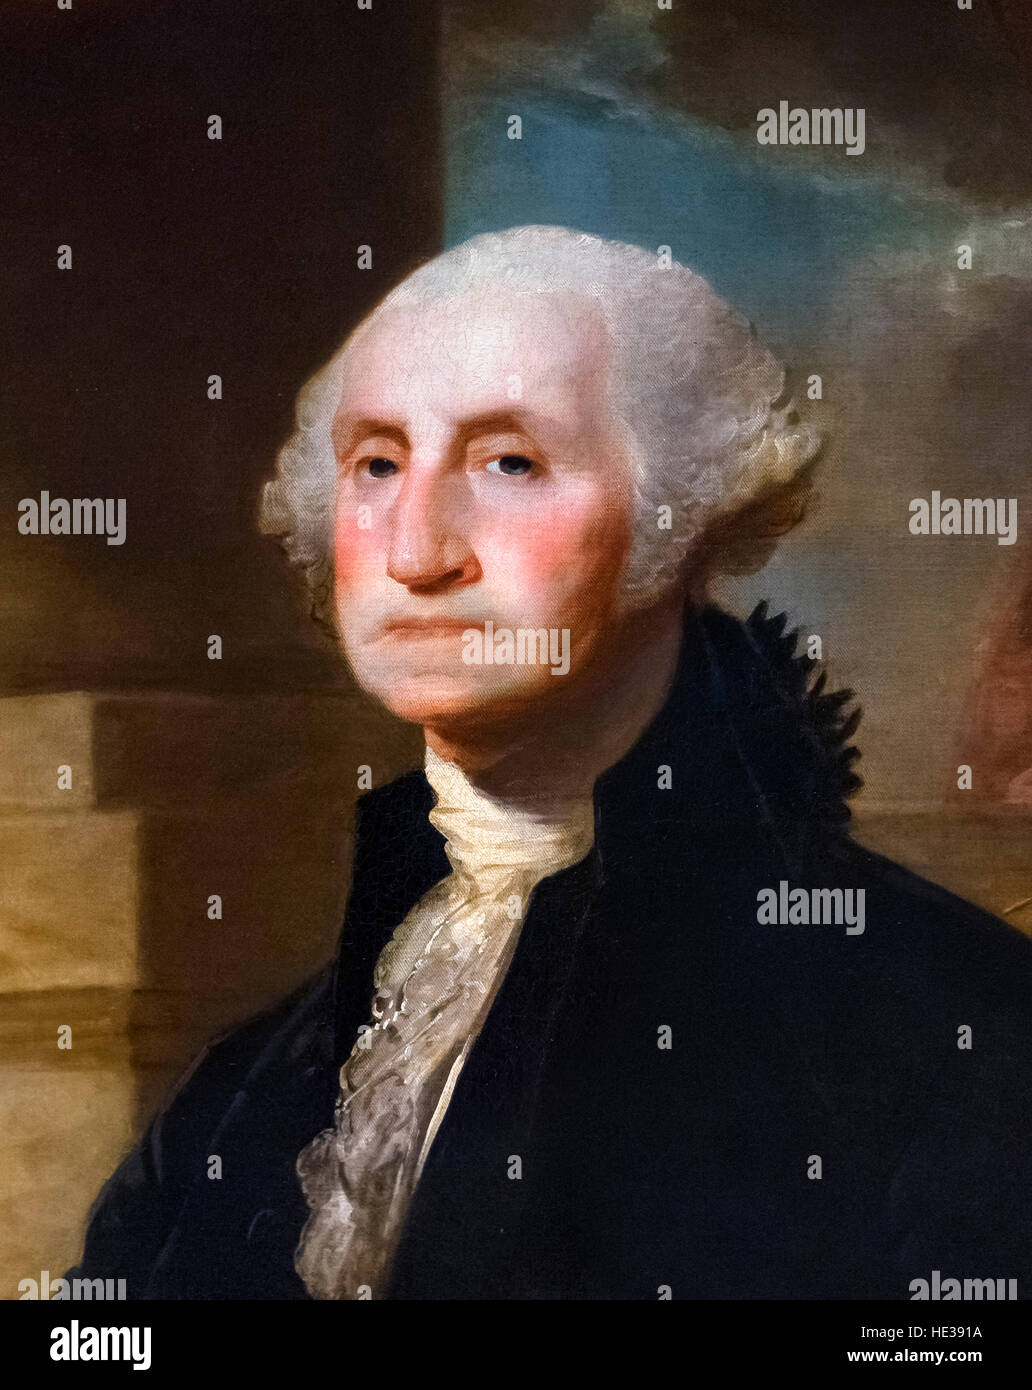 George Washington, Porträt von Gilbert Stuart, Öl auf Leinwand, 1797. Dieses Bild ist ein Ausschnitt aus einem größeren Gemälde, HE3919 Stockfoto